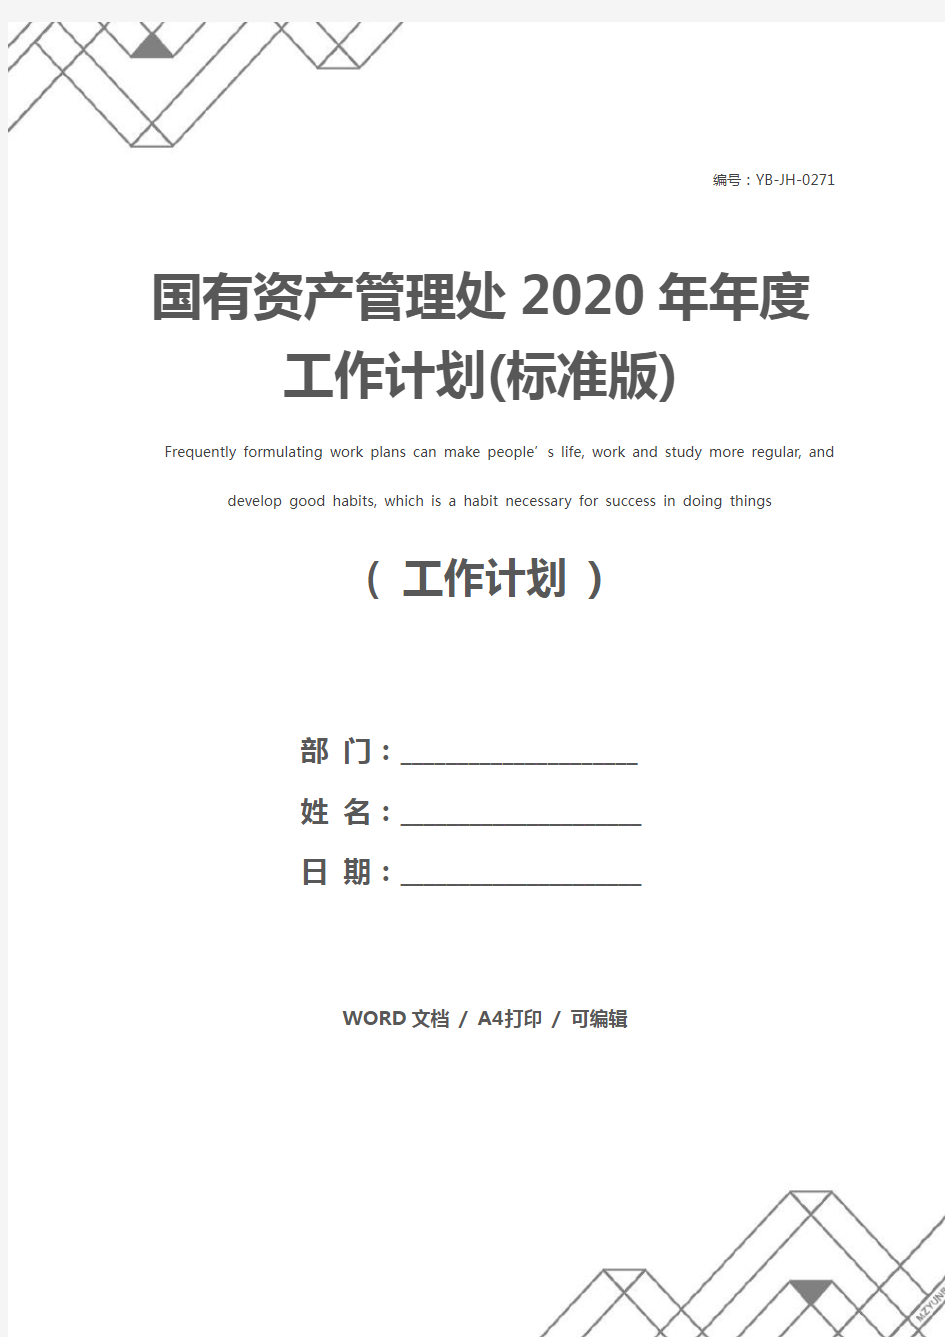 国有资产管理处2020年年度工作计划(标准版)